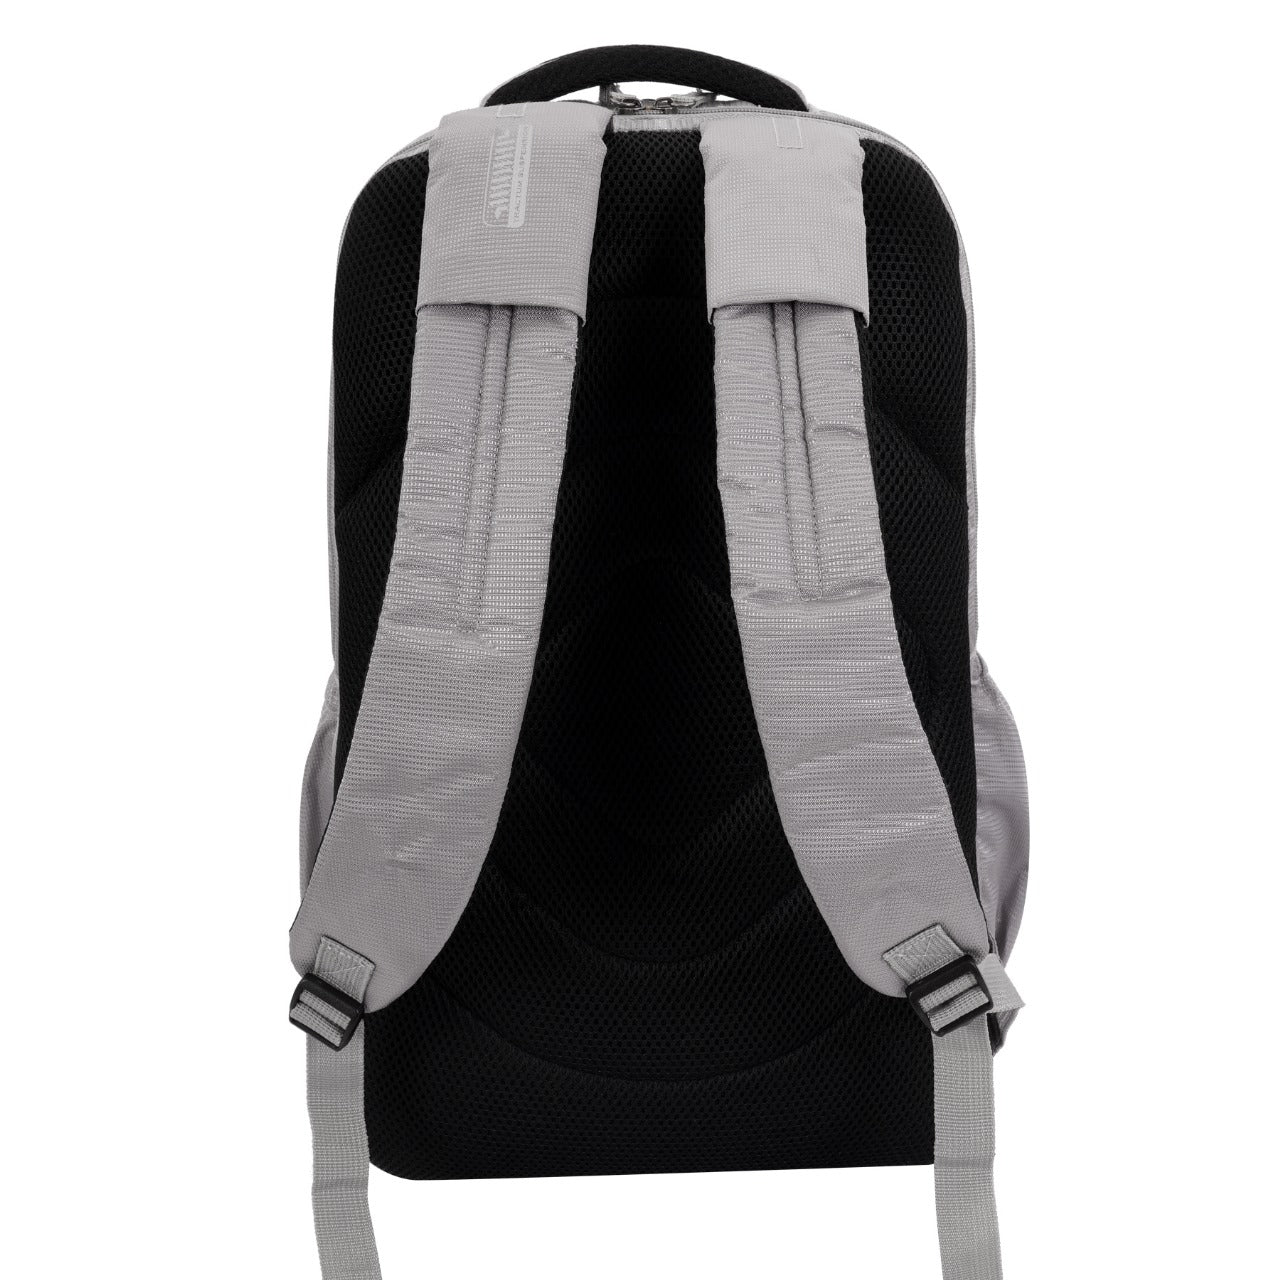 Buy 1 Get 1 Free | Multi Purpose Lightweight Waterproof Casual Espiral Suspension Backpack Bag